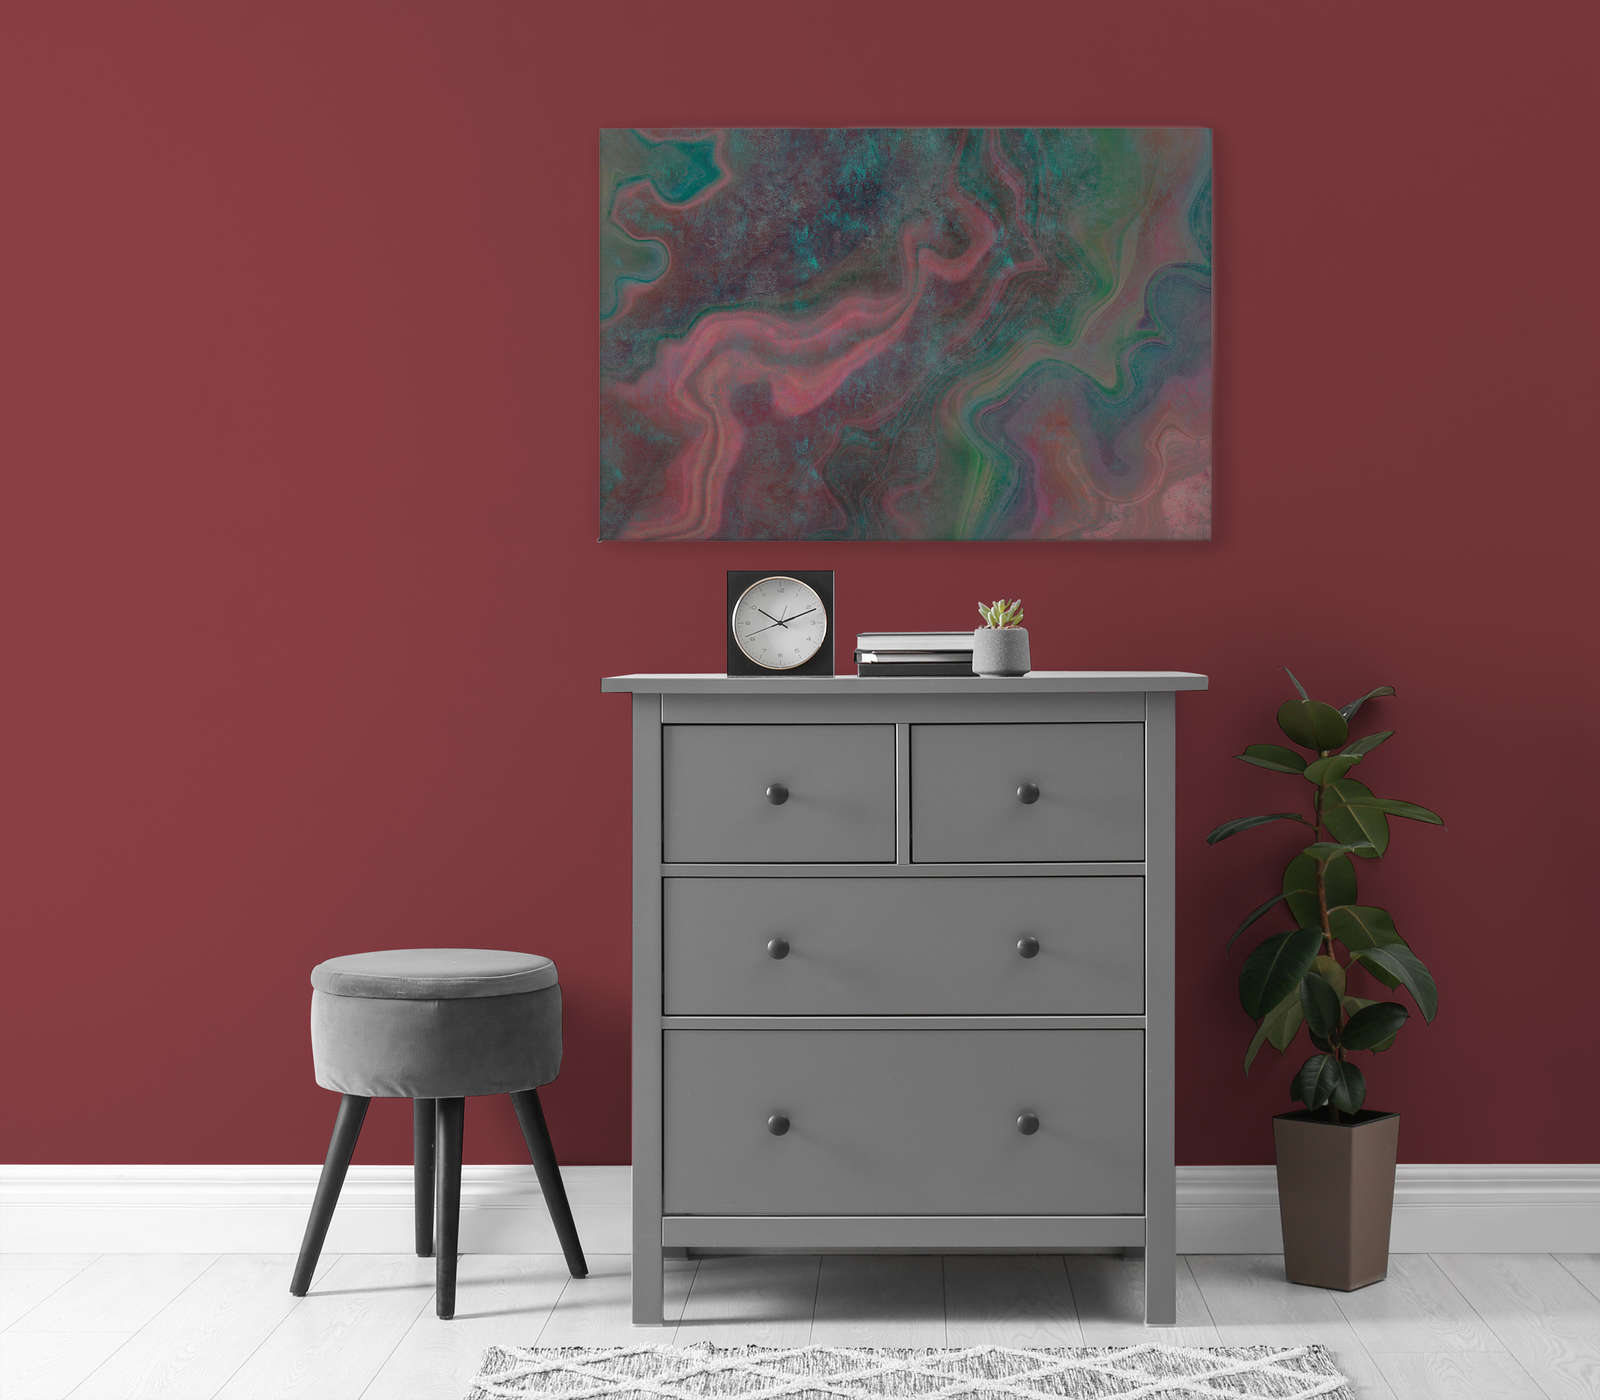             Marble 1 - Marbre coloré pour mettre en valeur la toile avec structure rayée - 1,20 m x 0,80 m
        